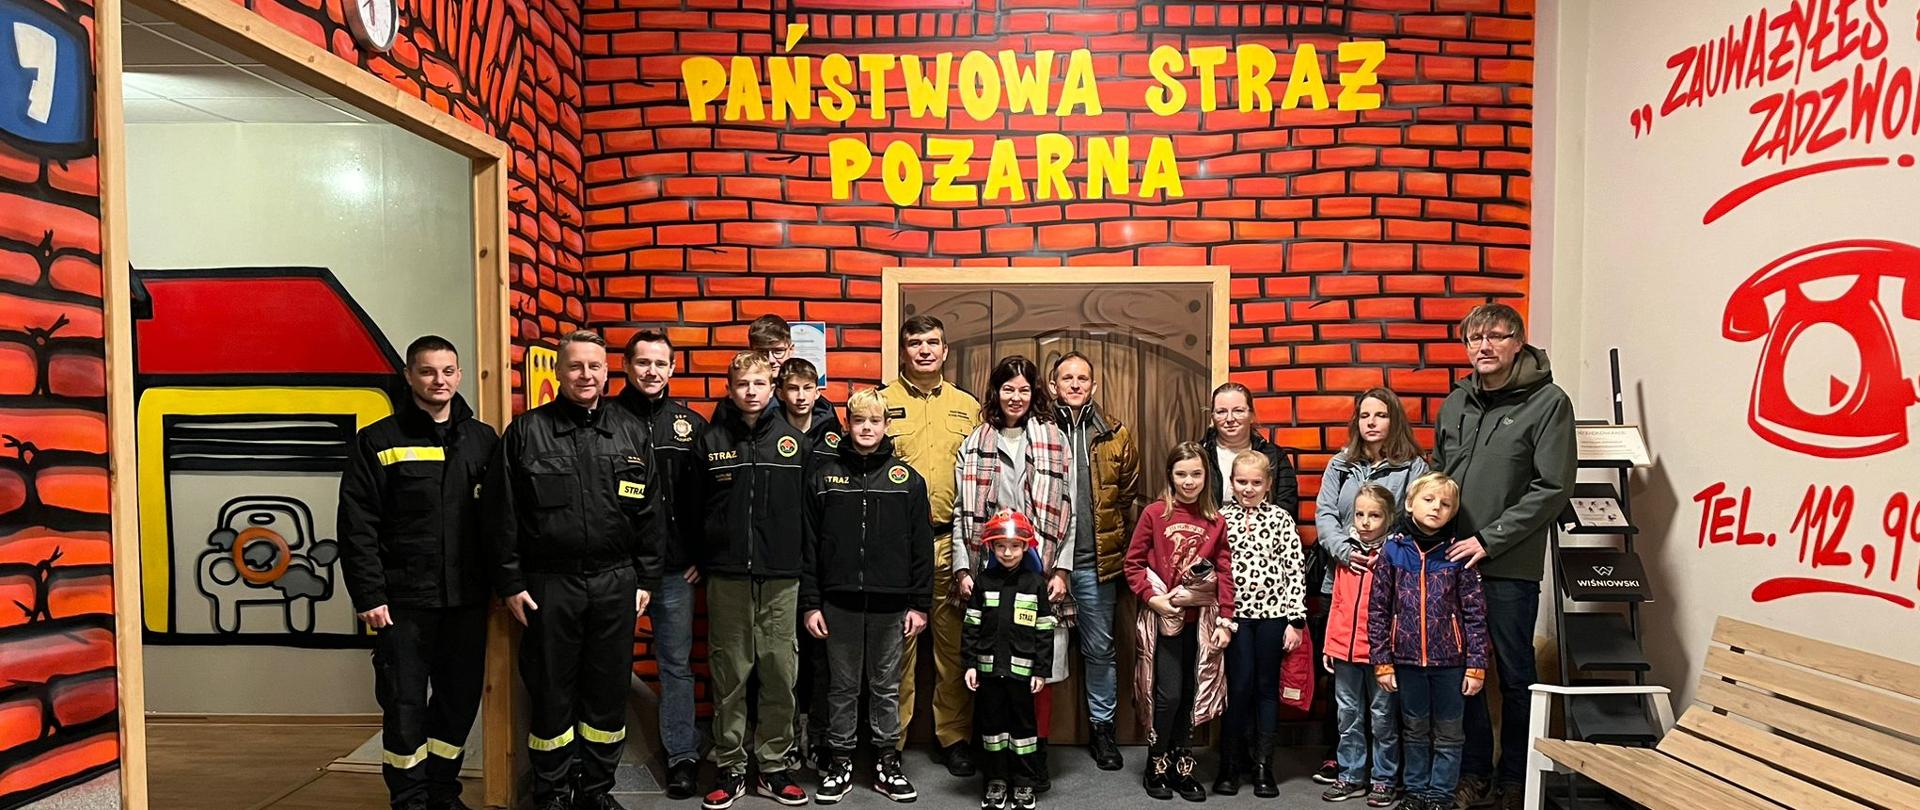 Zdjęcie strażaków z gośćmi którzy odwiedzili Centrum Edukacji Przeciwpożarowej